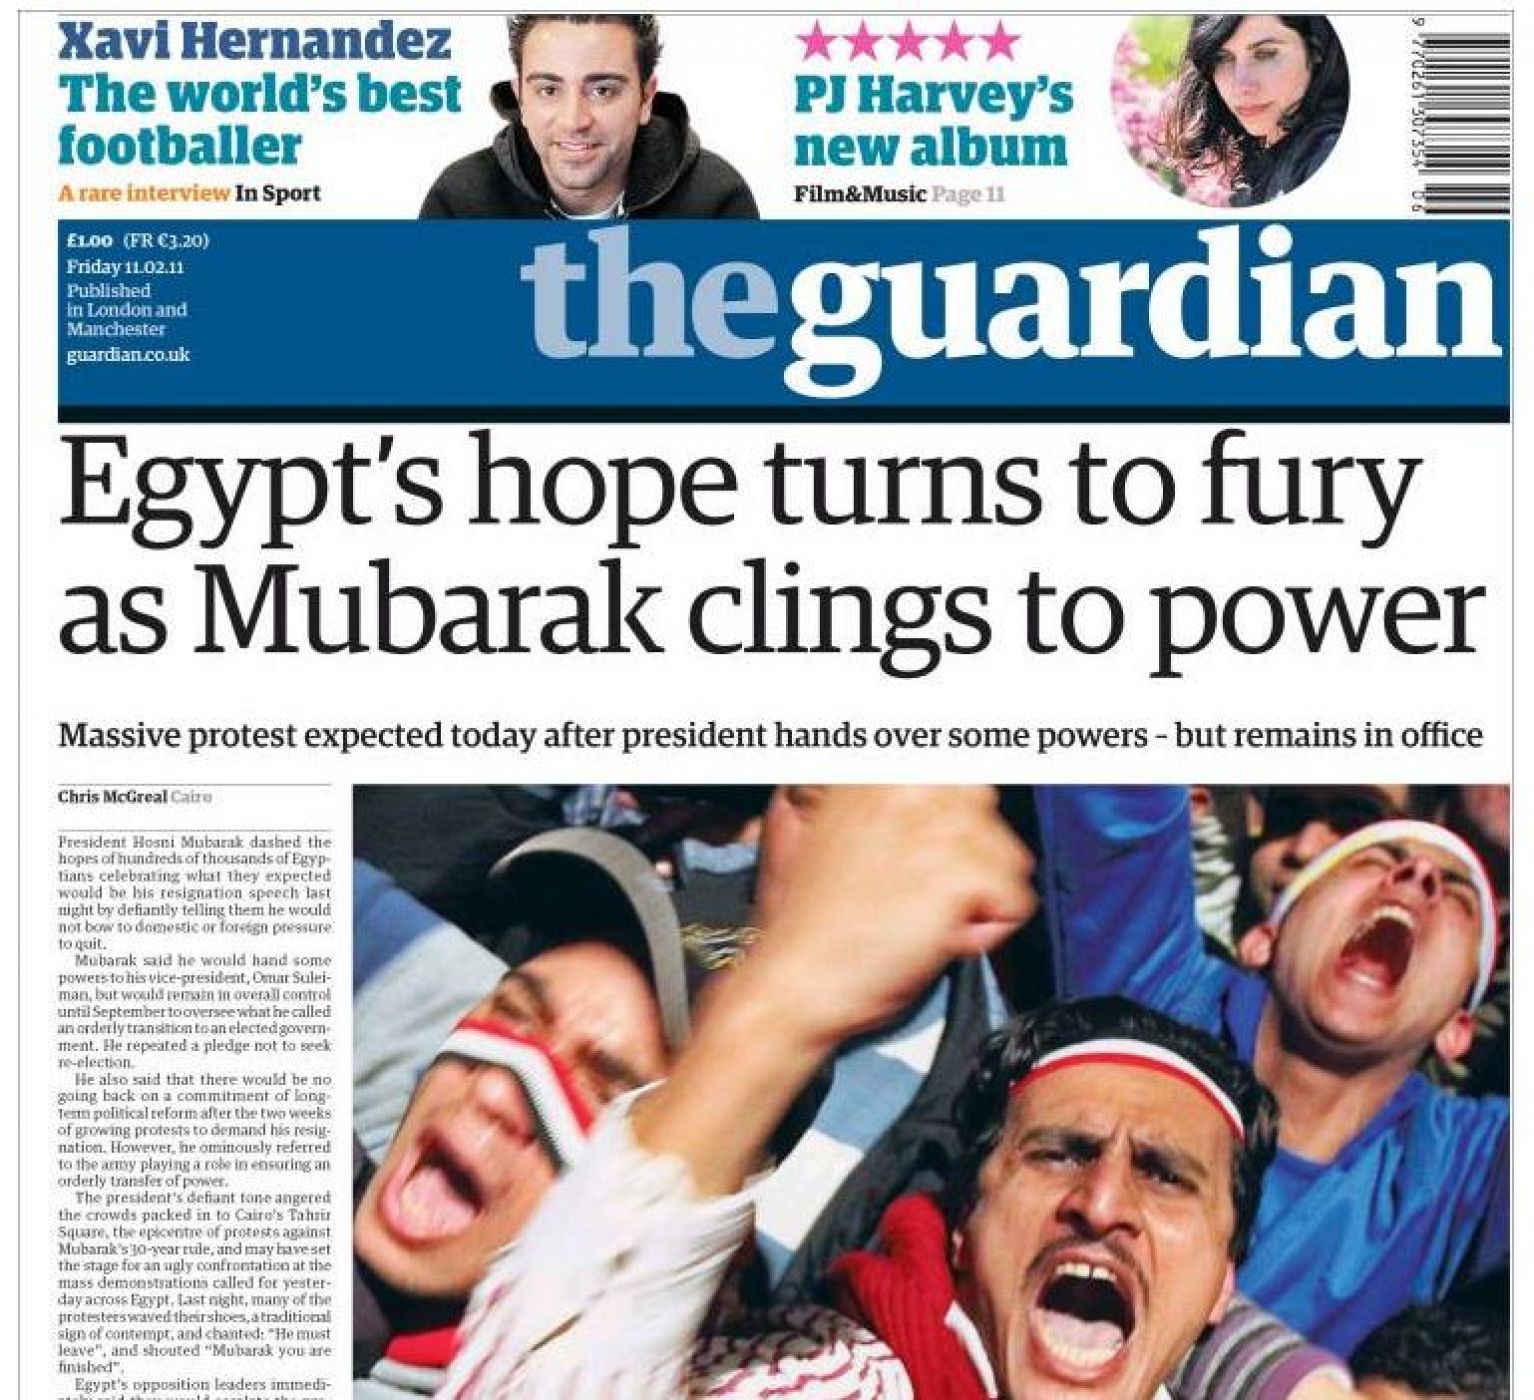 The Guardian publica en su portada de este viernes 11 de febrero de 2011 una entrevista con Xavi Hernández, jugador del Barcelona y de la selección española.